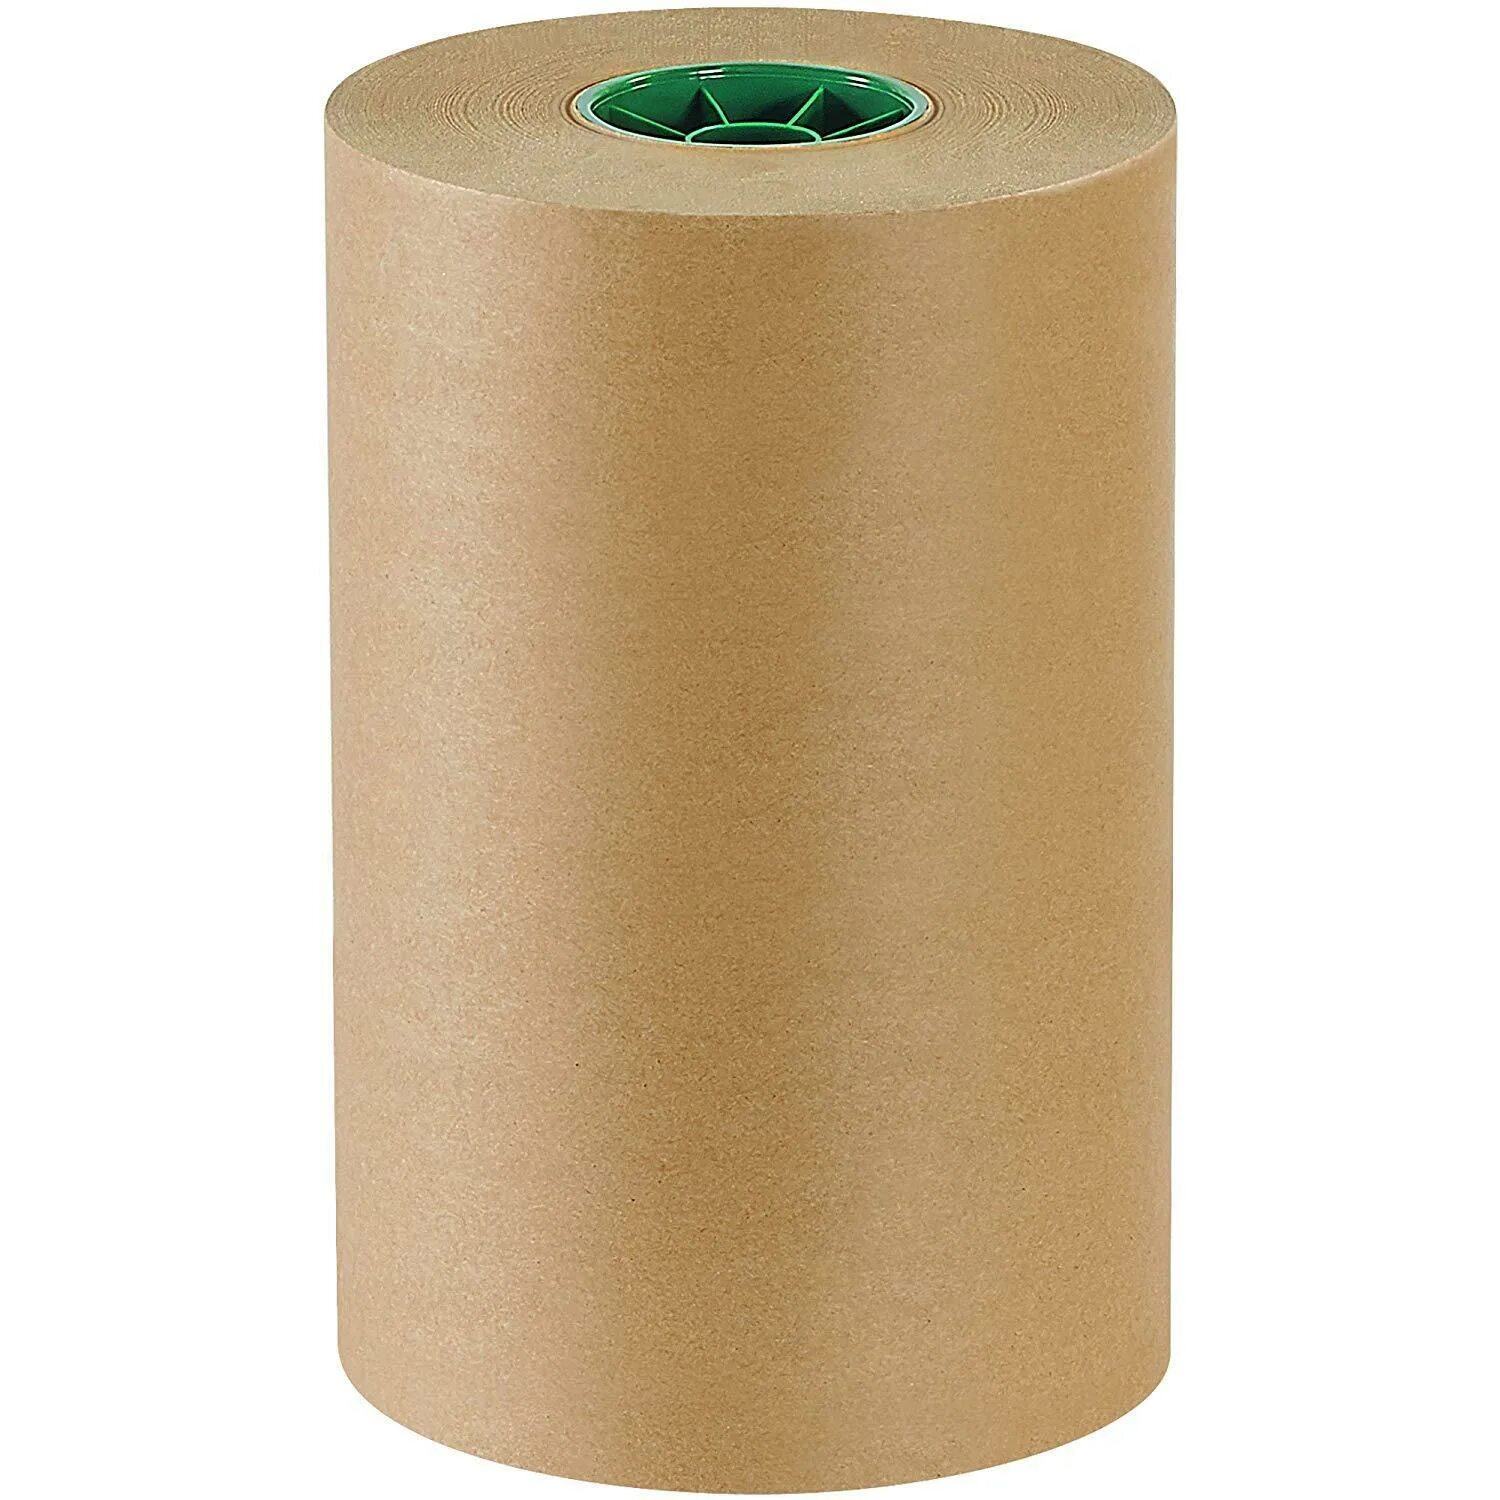 Браун бумага. Рулон бумаги. Крафт бумага. Упаковочная бумага в рулонах. Бумага для упаковки в больших рулонах.